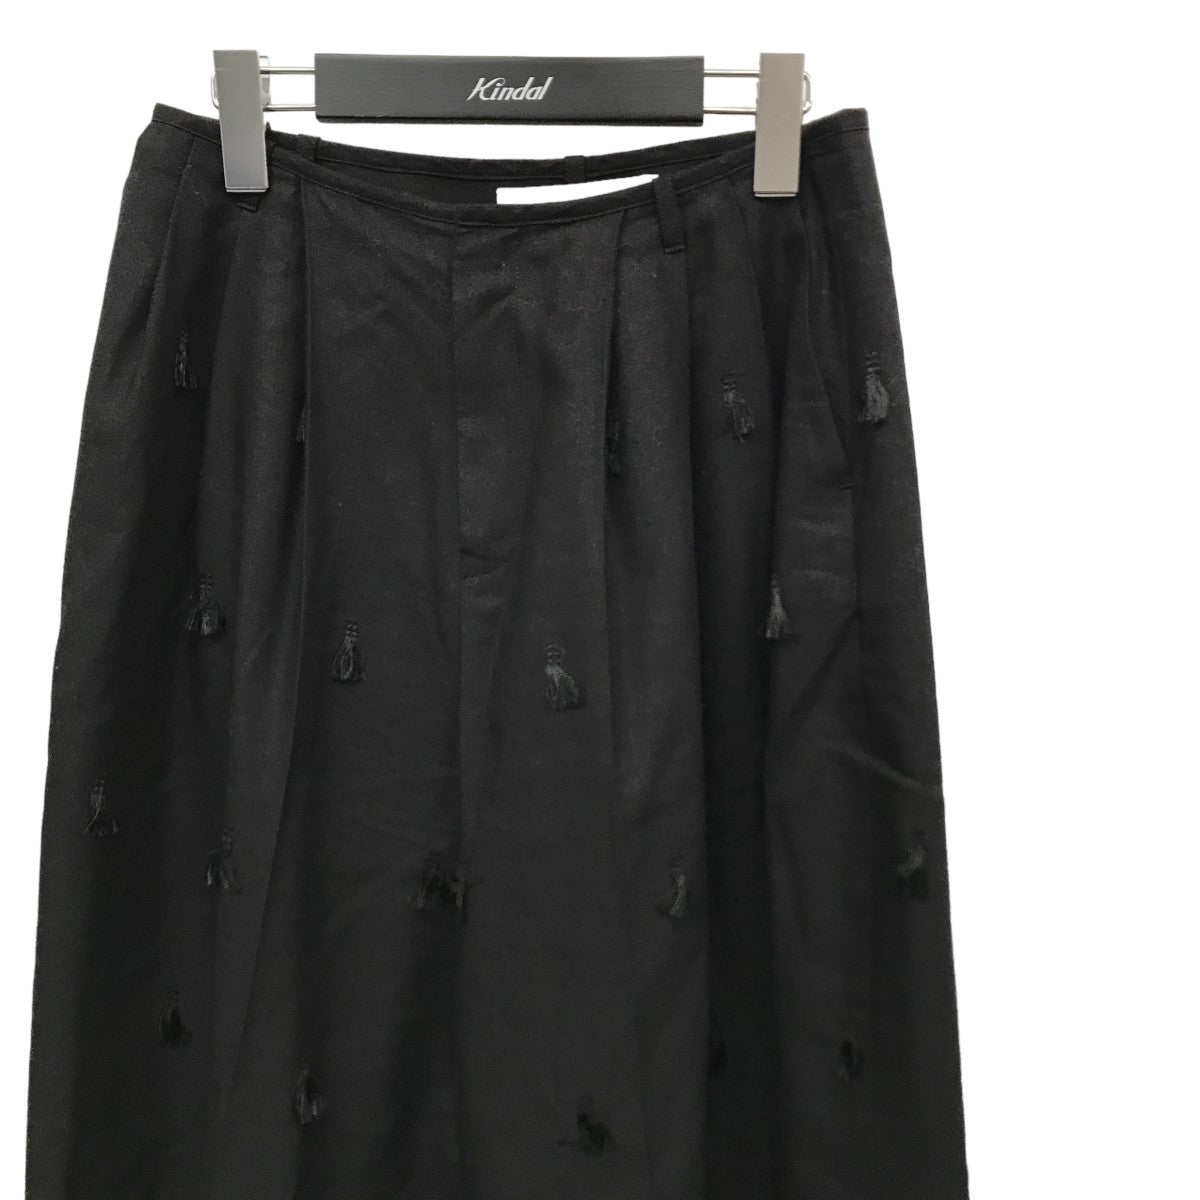 IRENE(アイレネ) Tuck Trousers フリンジ刺繍ワイドパンツ 23S88001 ...